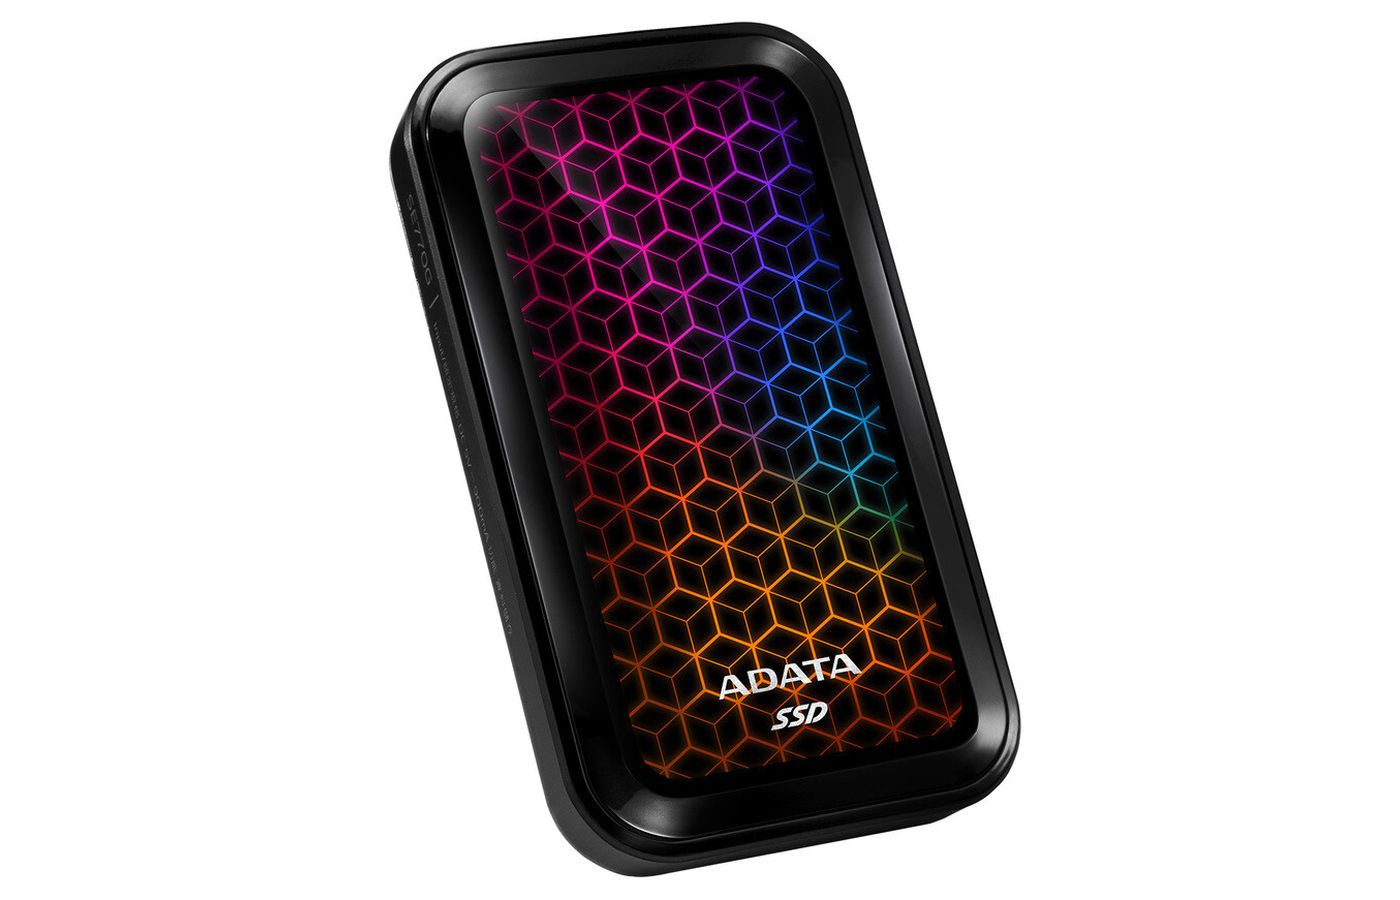 ADATA sort un SSD externe RGB... parce qu'il n'y a jamais assez de LEDs